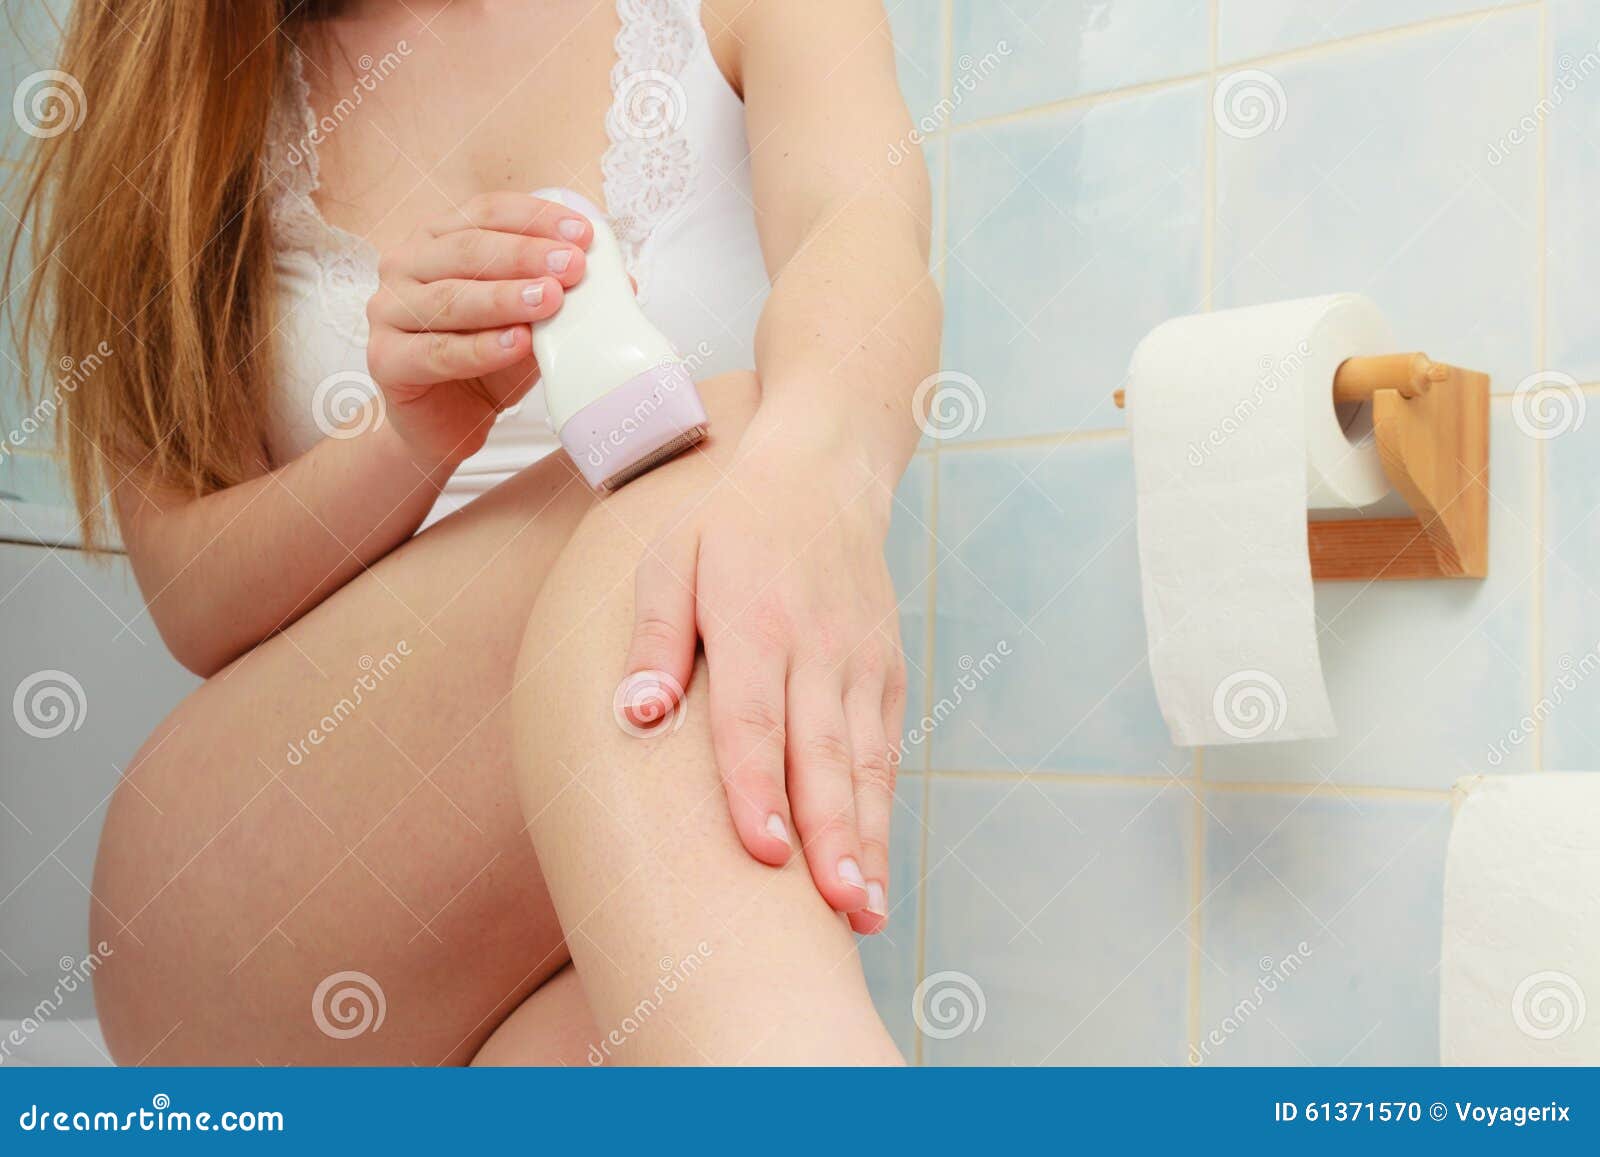 Брить мамаши. Девушка бреется в душе. Девочки Бреются в ванной. Девушка бреется в ванной. Девушка бреет киску в ванной.